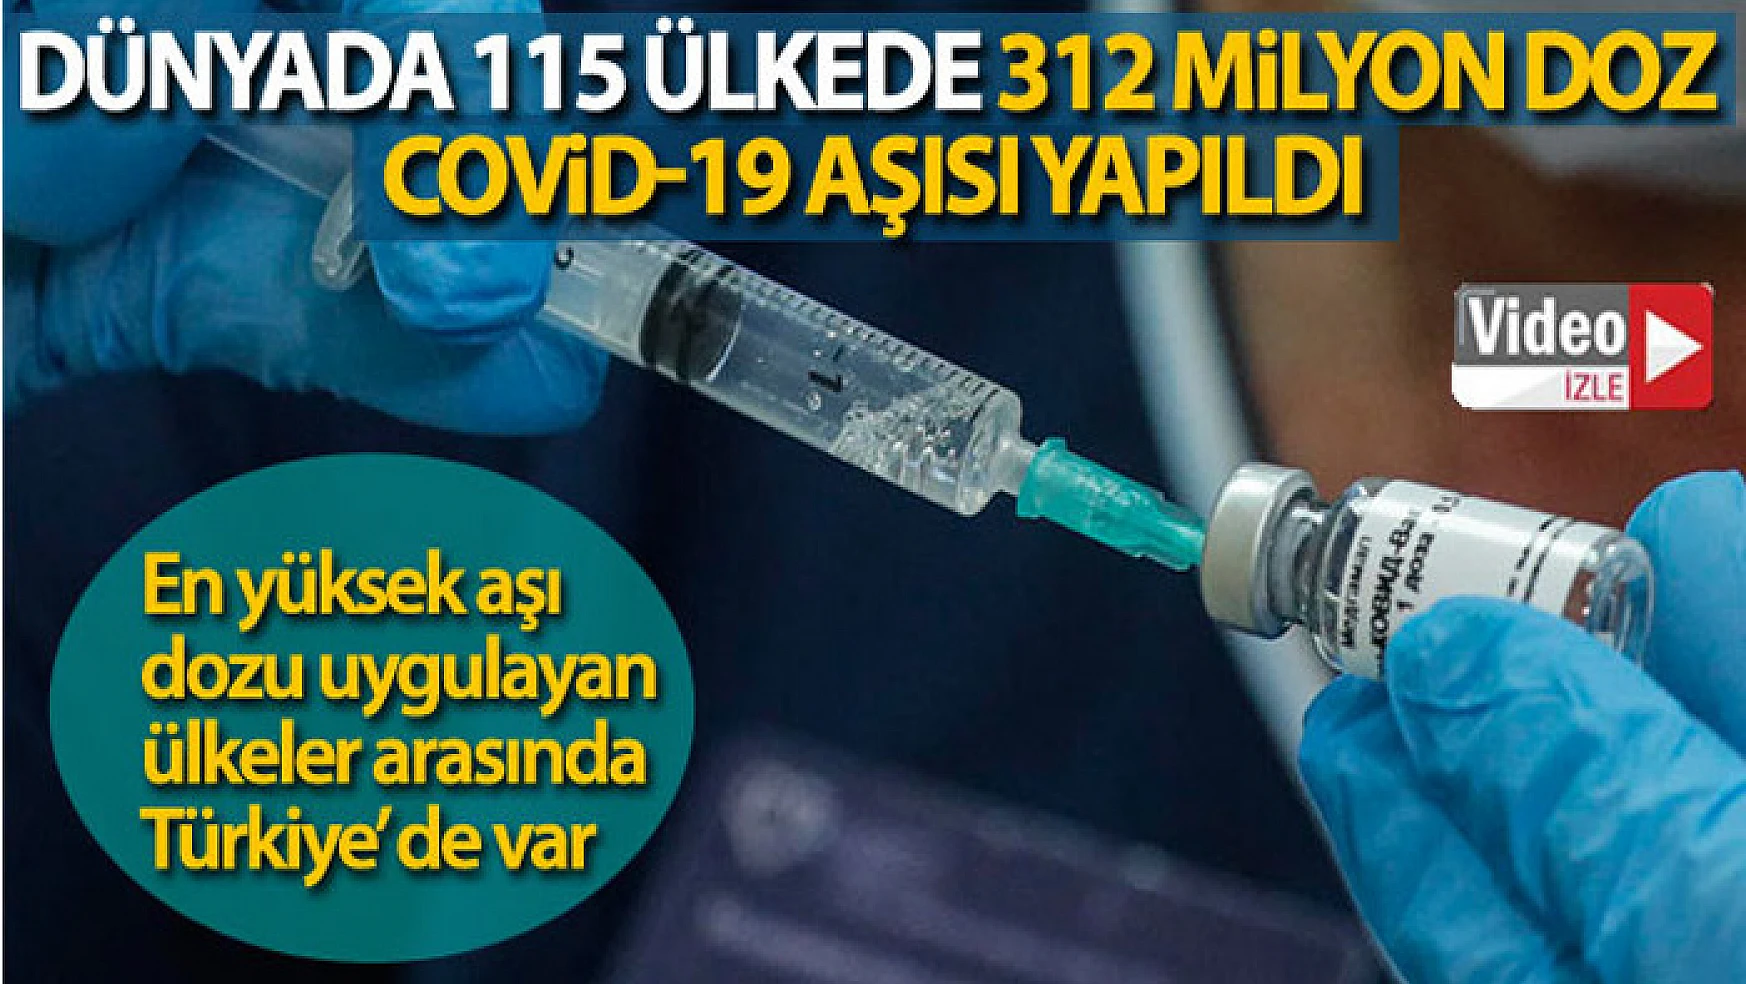 Dünyada 115 ülkede 312 milyon doz Covid-19 aşısı yapıldı